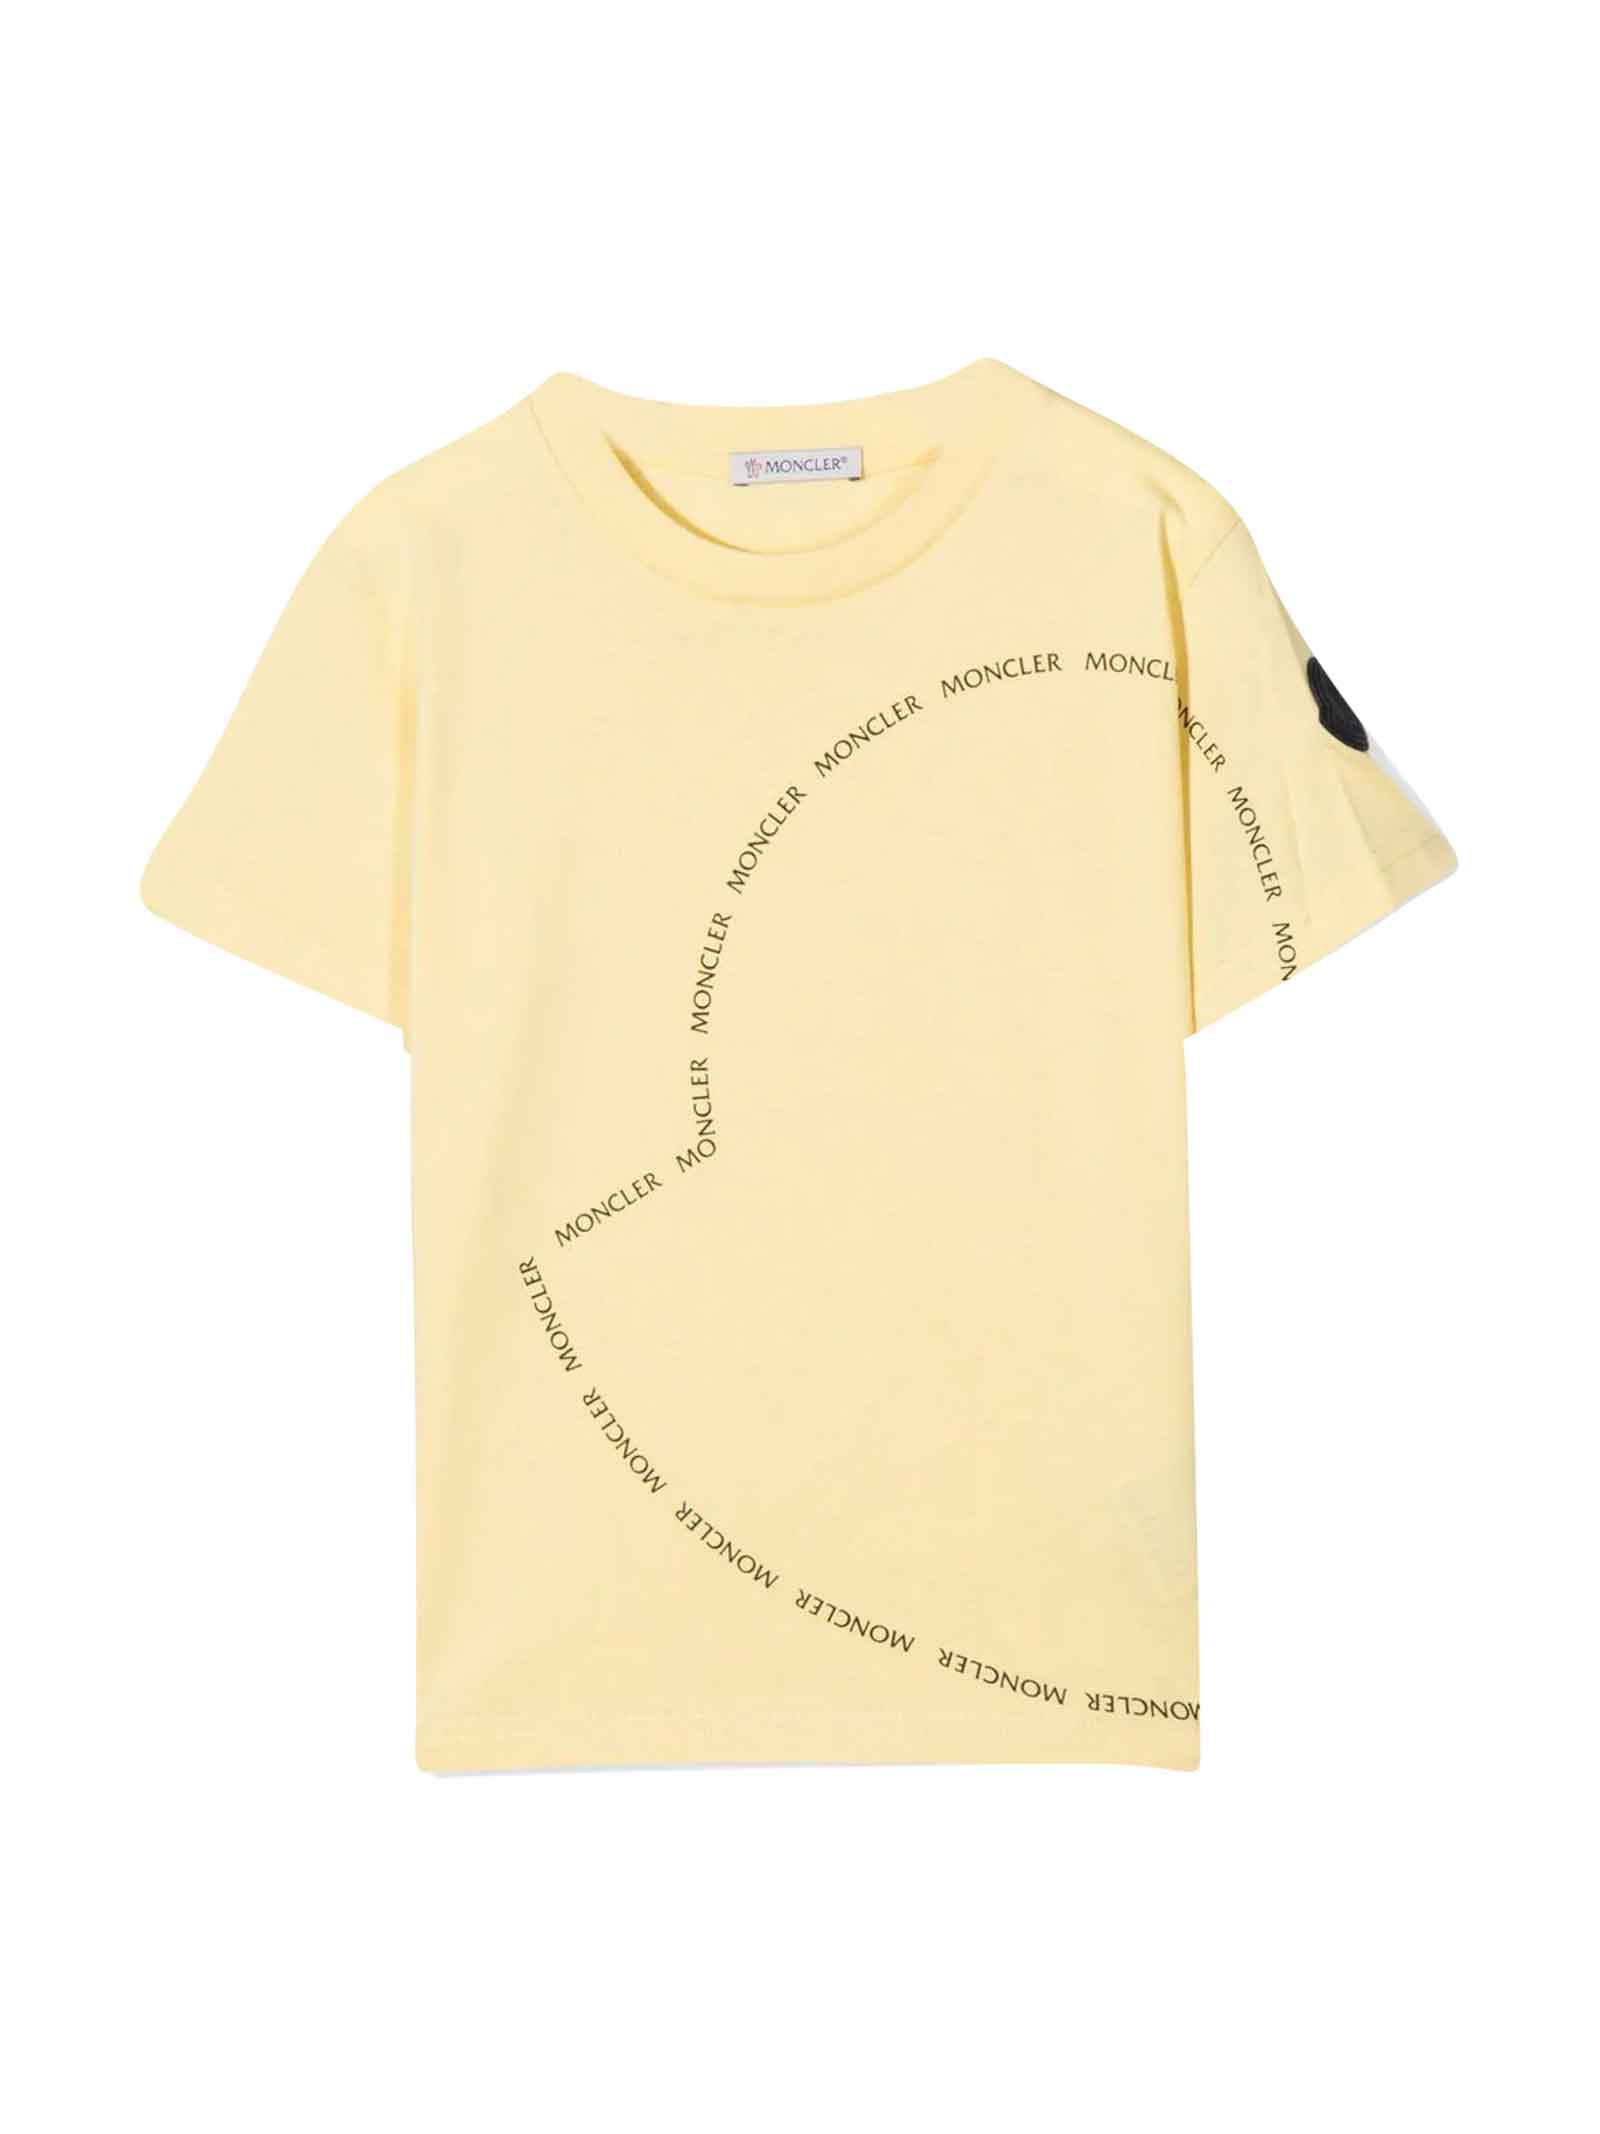 Moncler Enfant Unisex Yellow T-shirt